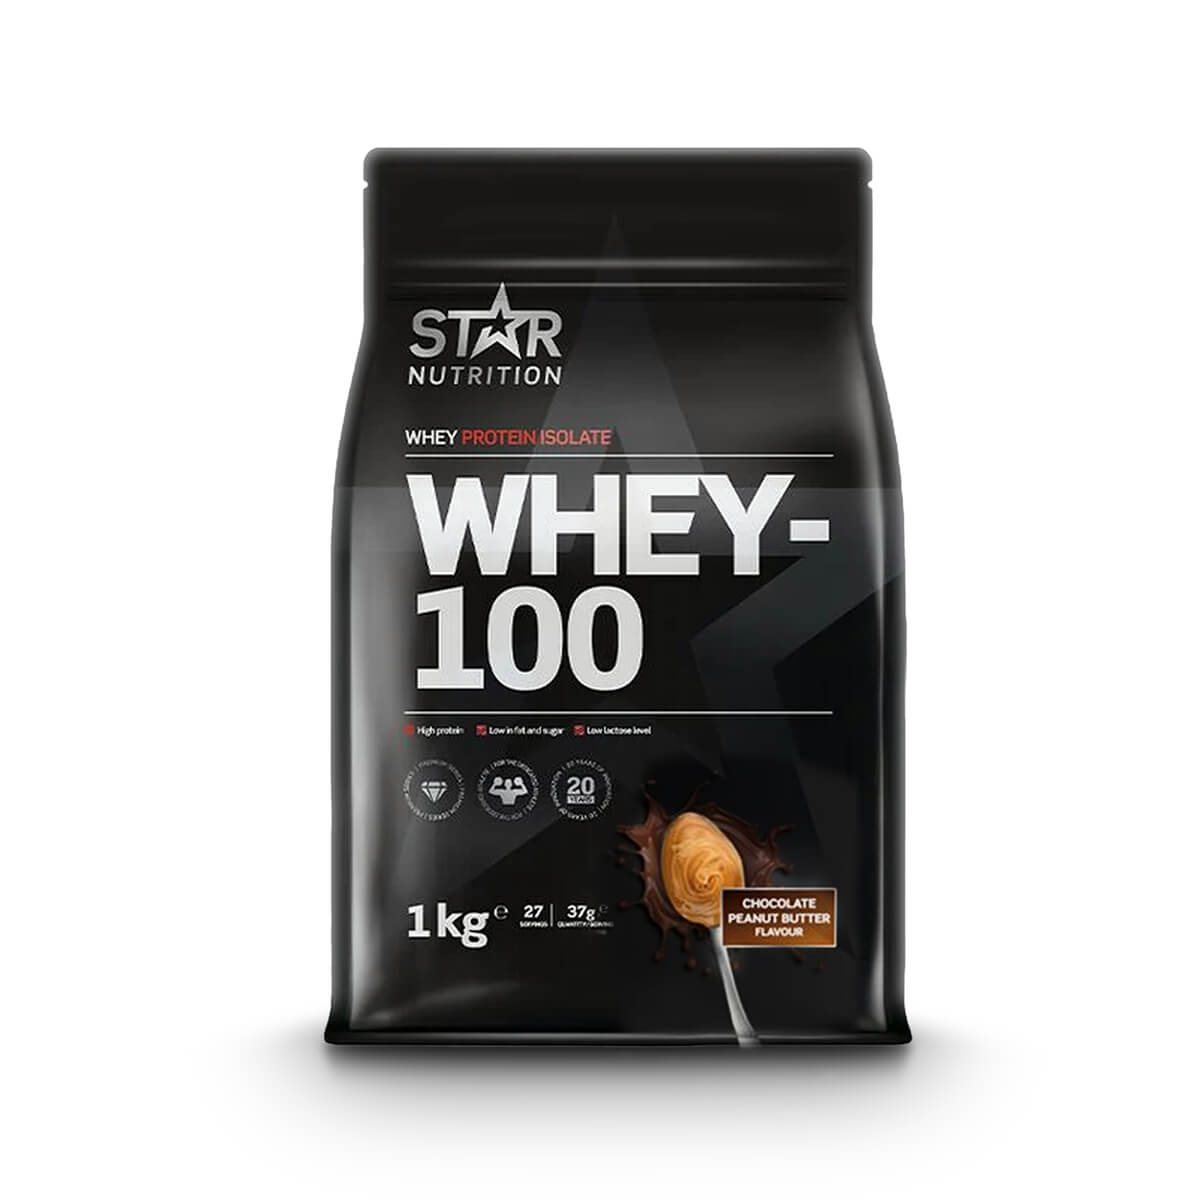 Whey-100, 1 kg, Star Nutrition